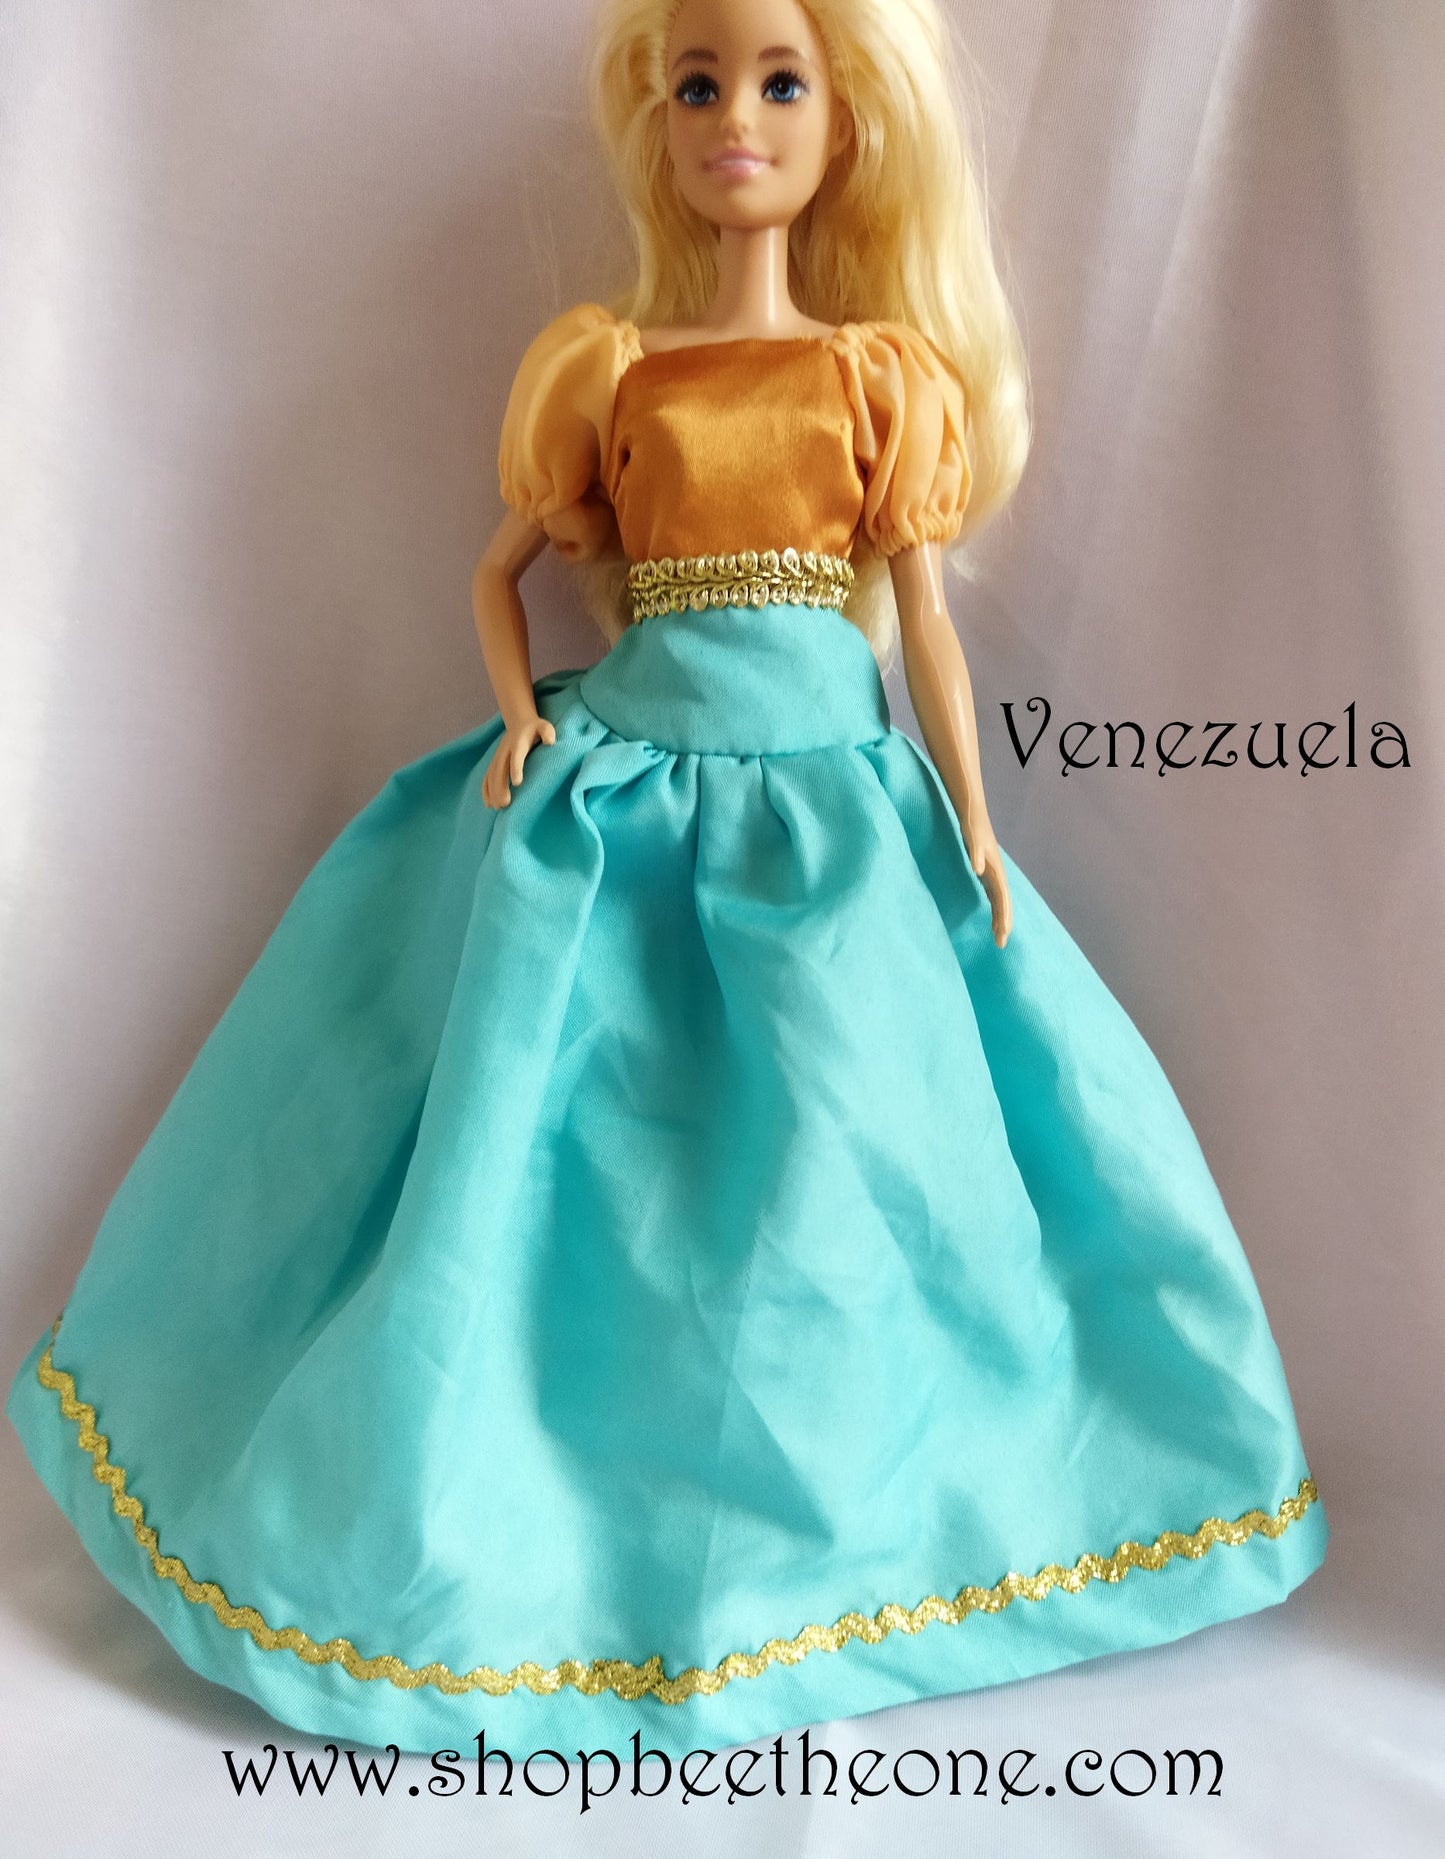 Barbie Les Robes de mes Voyages - Venezuela et Cuba - RBA 2013/2014 - Vêtements